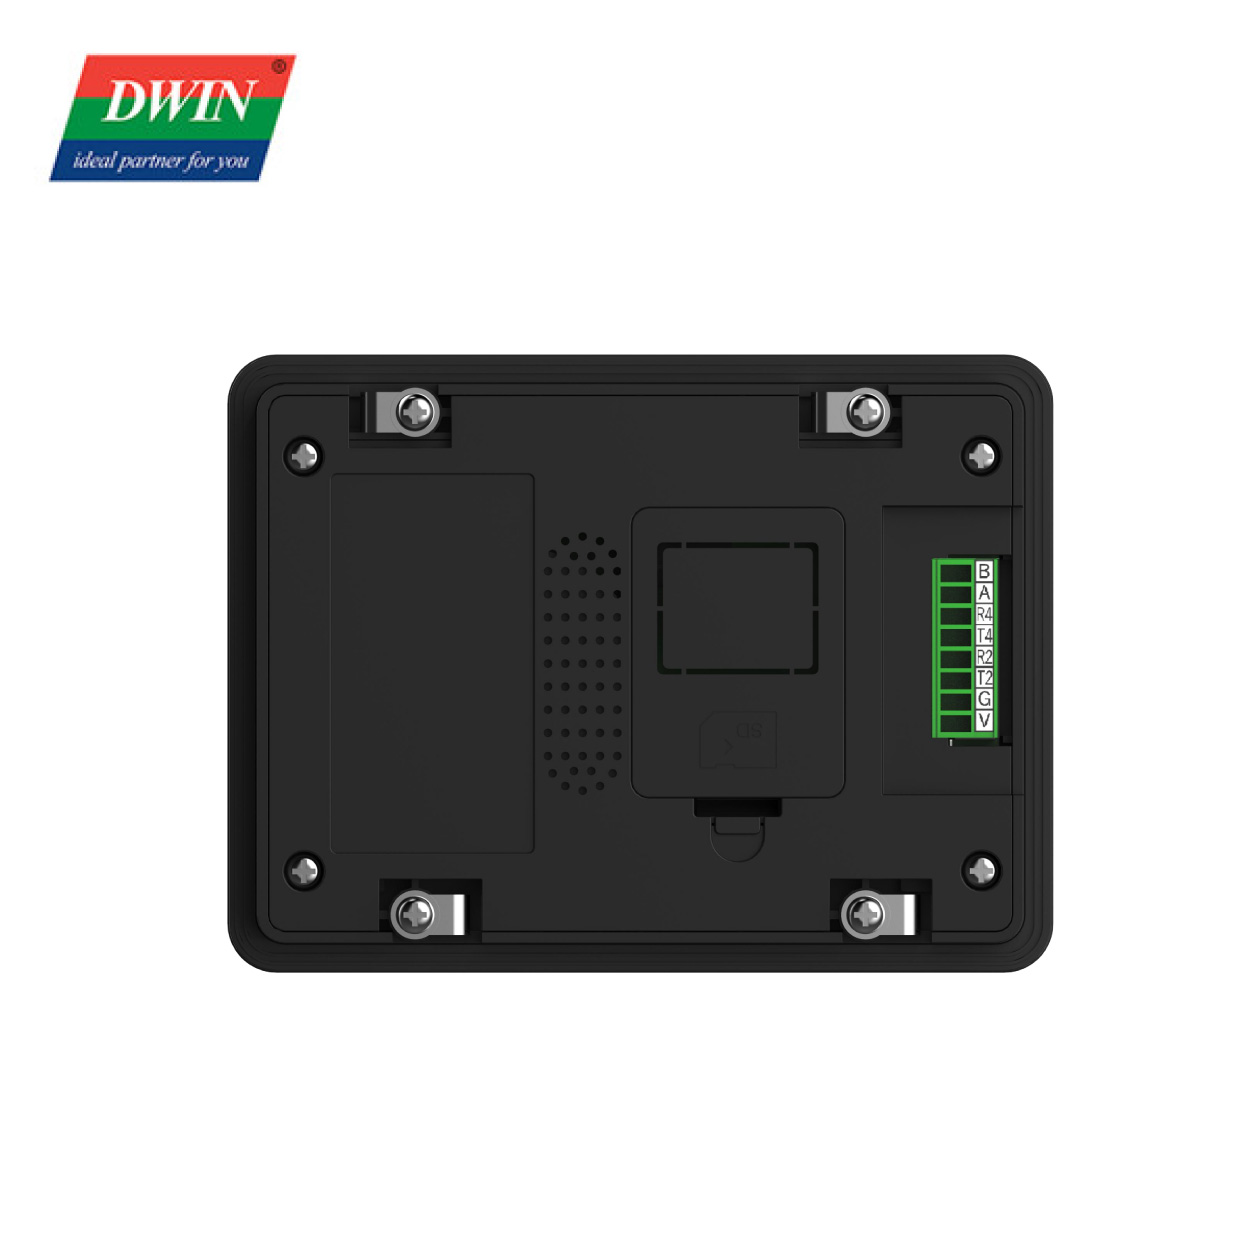 4,3-calowy wyświetlacz LCD Modbus PLC DMG80480T043_A5W (klasa przemysłowa)